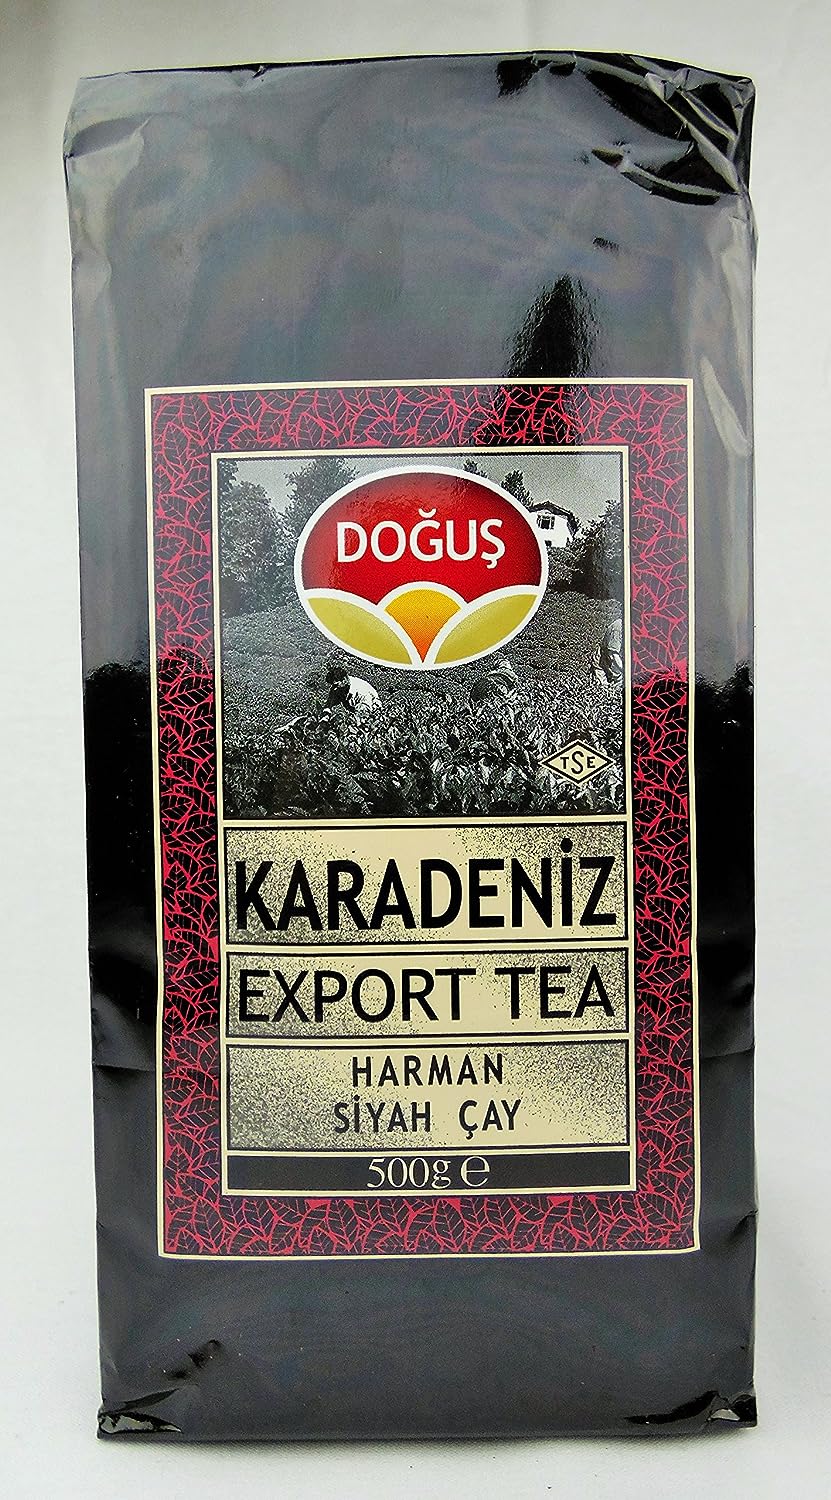 Dogus Exclusive Turkish Black Tea Series (Karadeniz Harman Black Tea Single Pack)